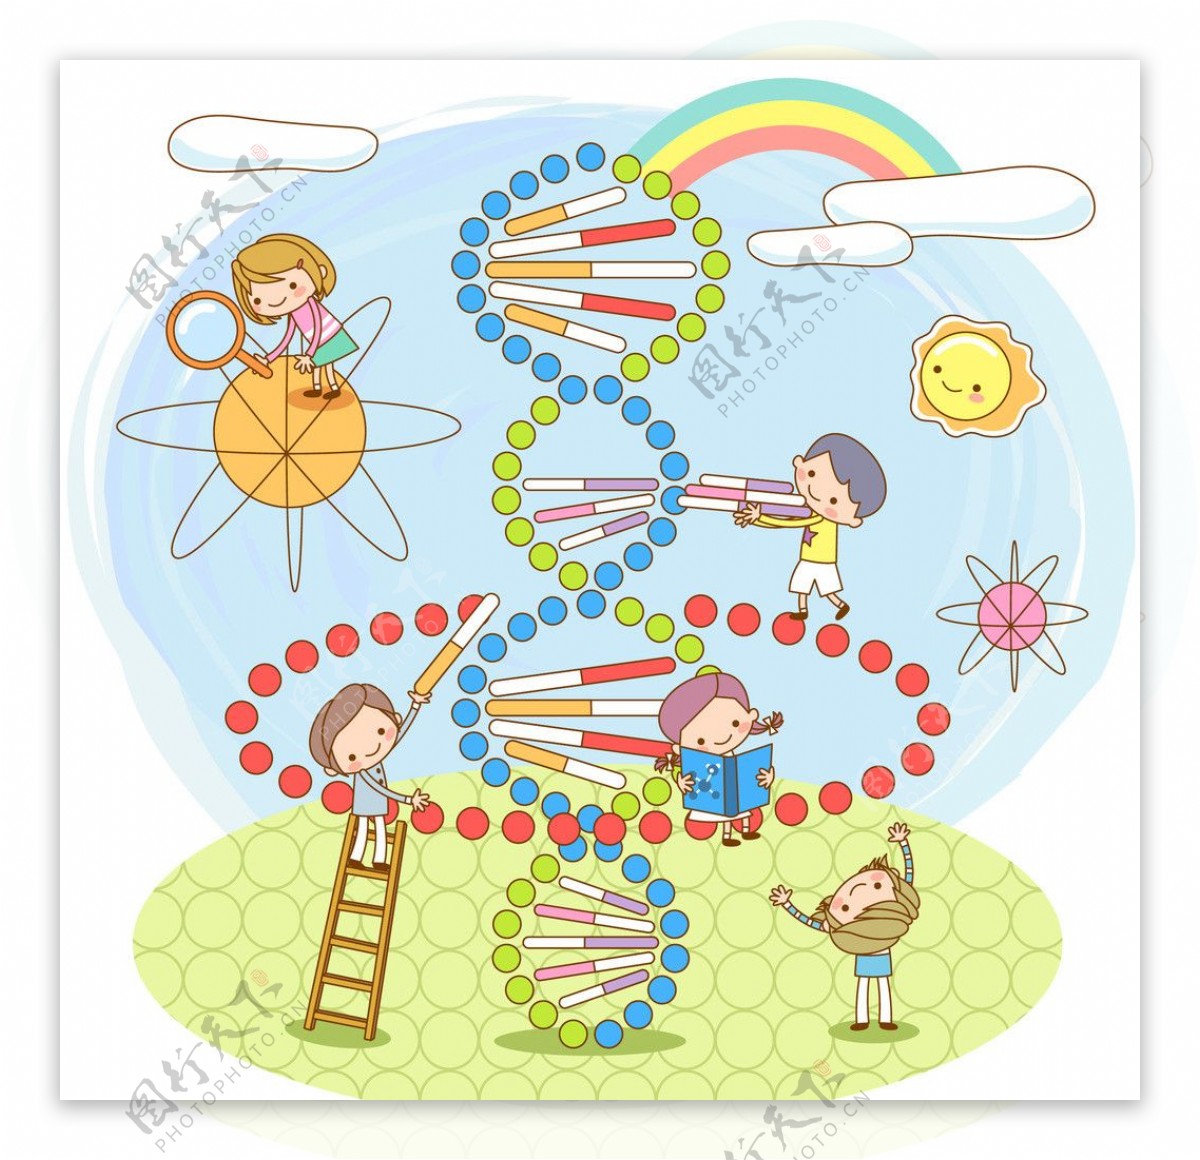 基因DNA模型图片